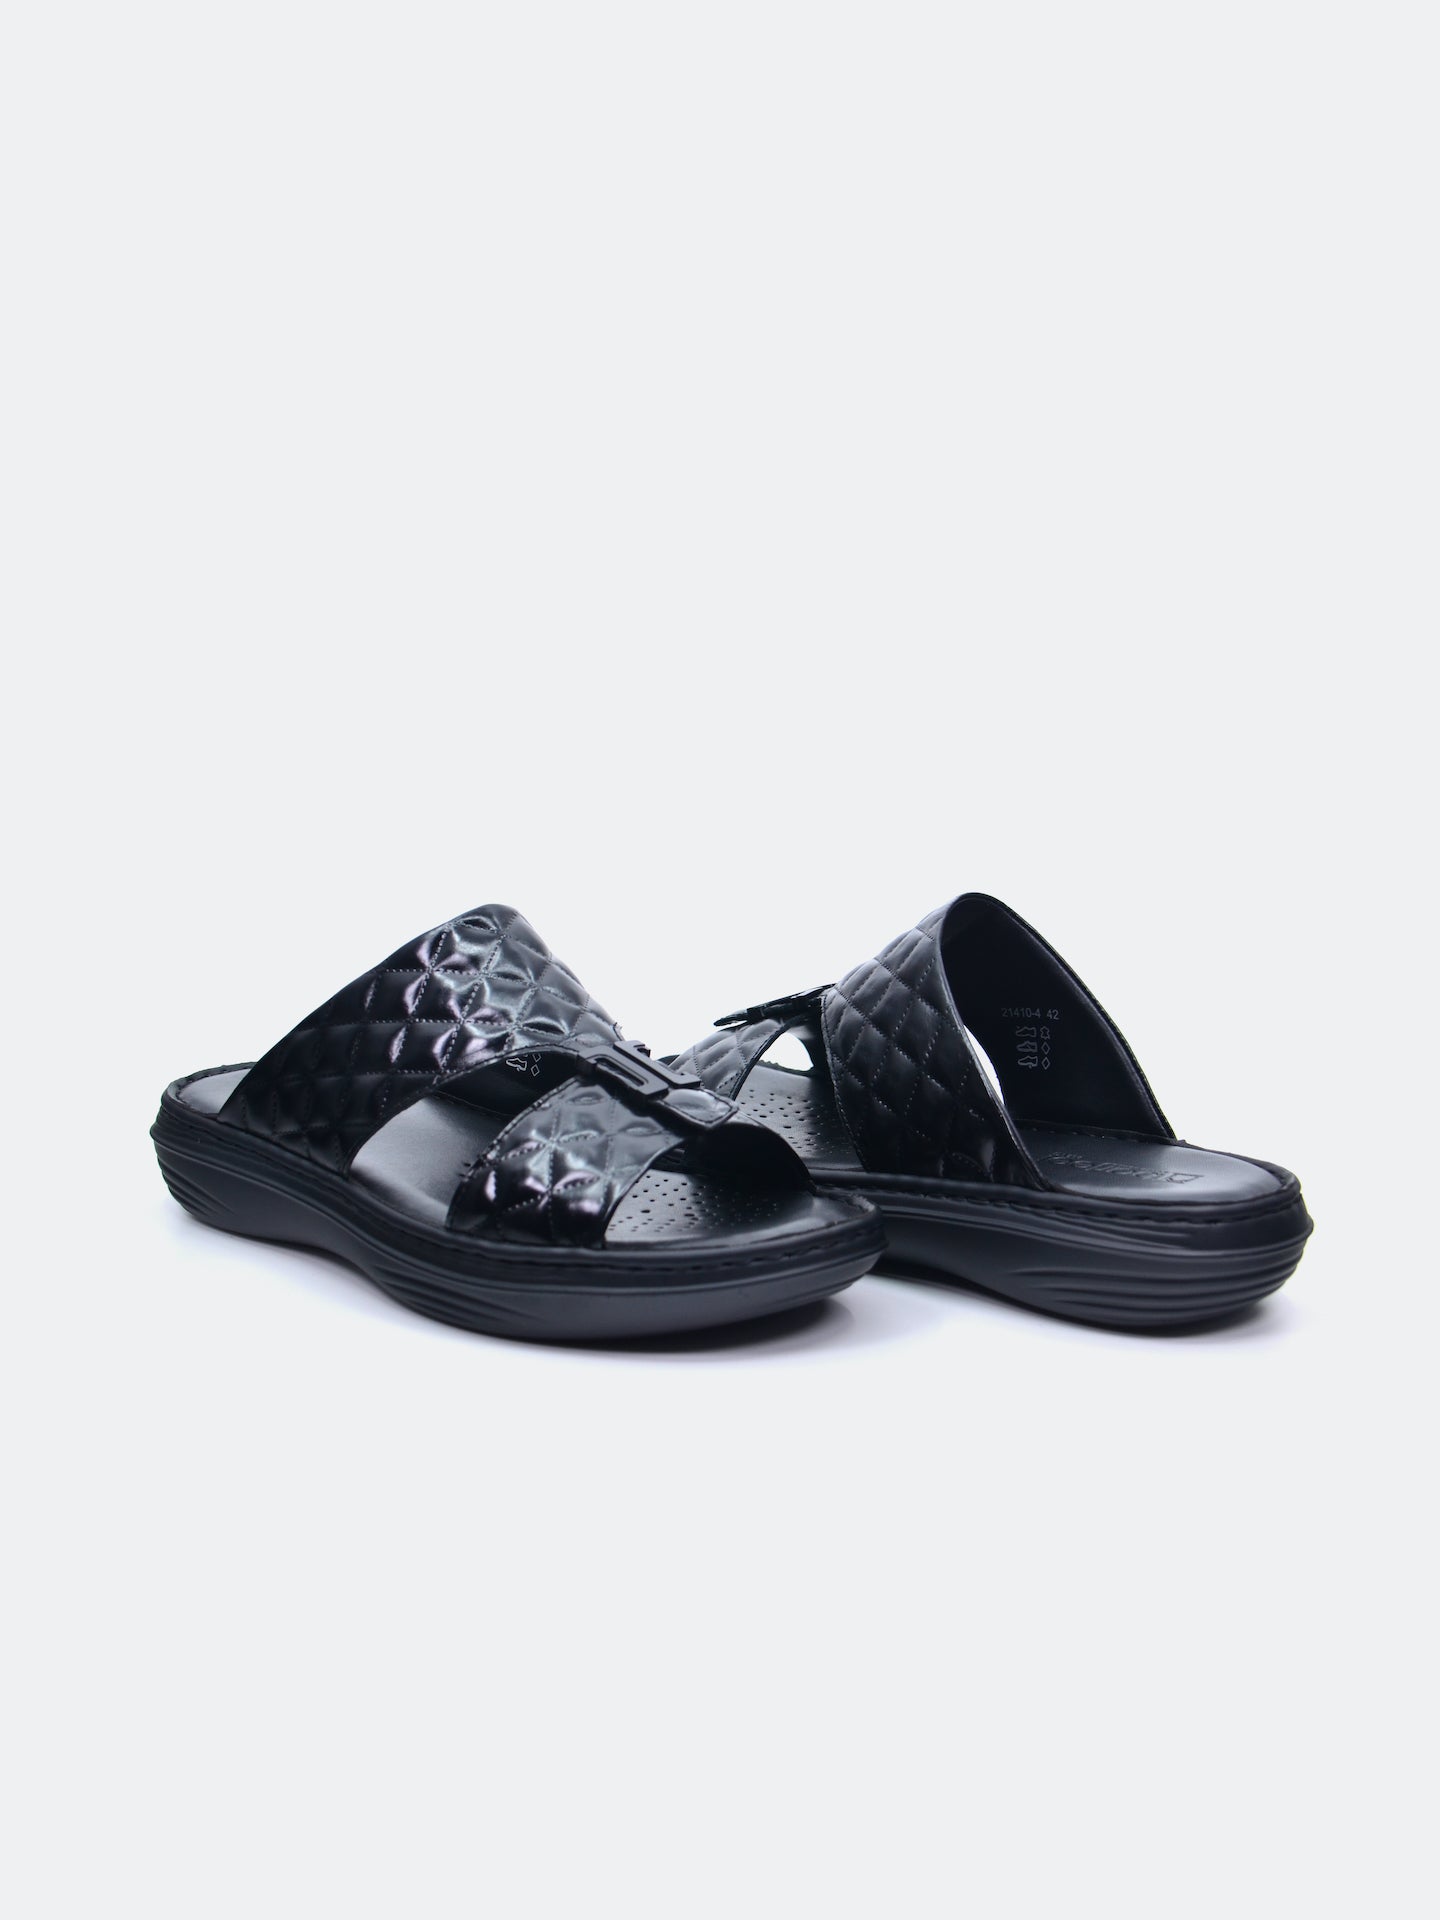 Barjeel Uno 21410-4 Men's Arabic Sandals #color_Black